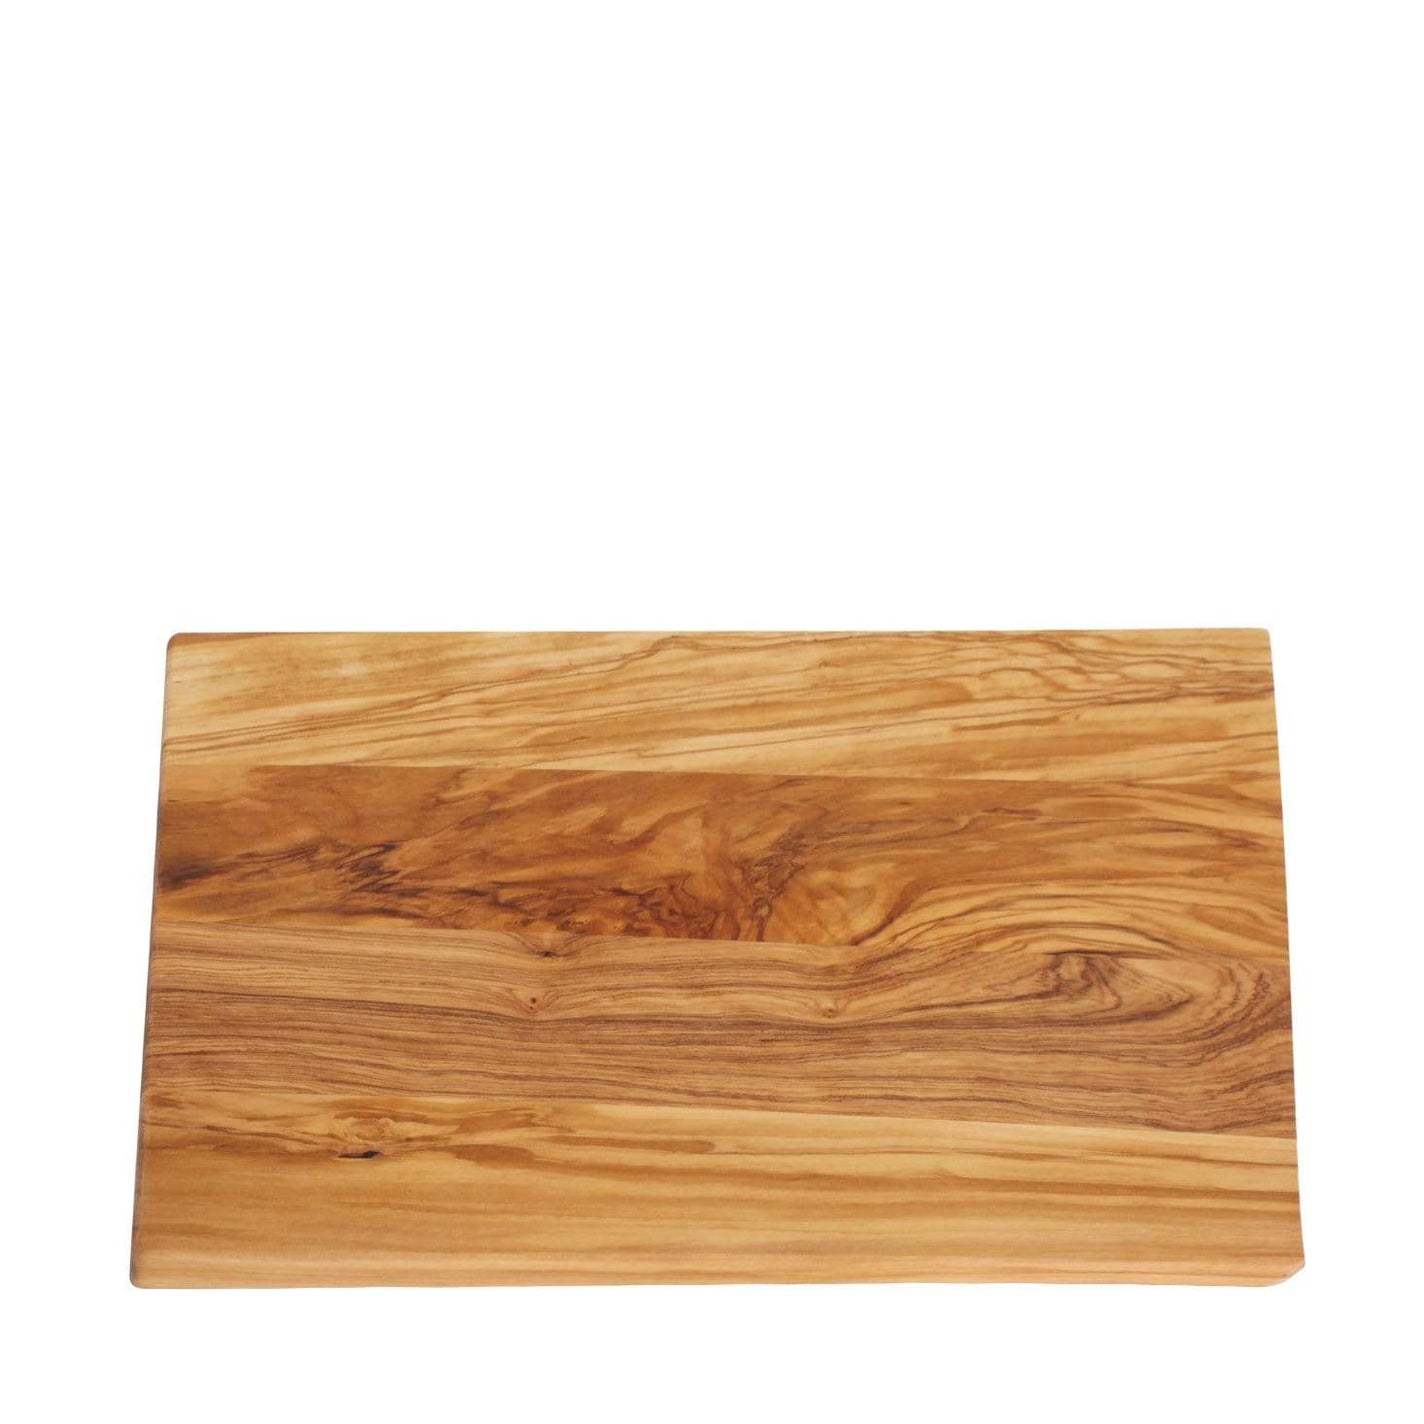 Redecker Olive Wood Cutting Board